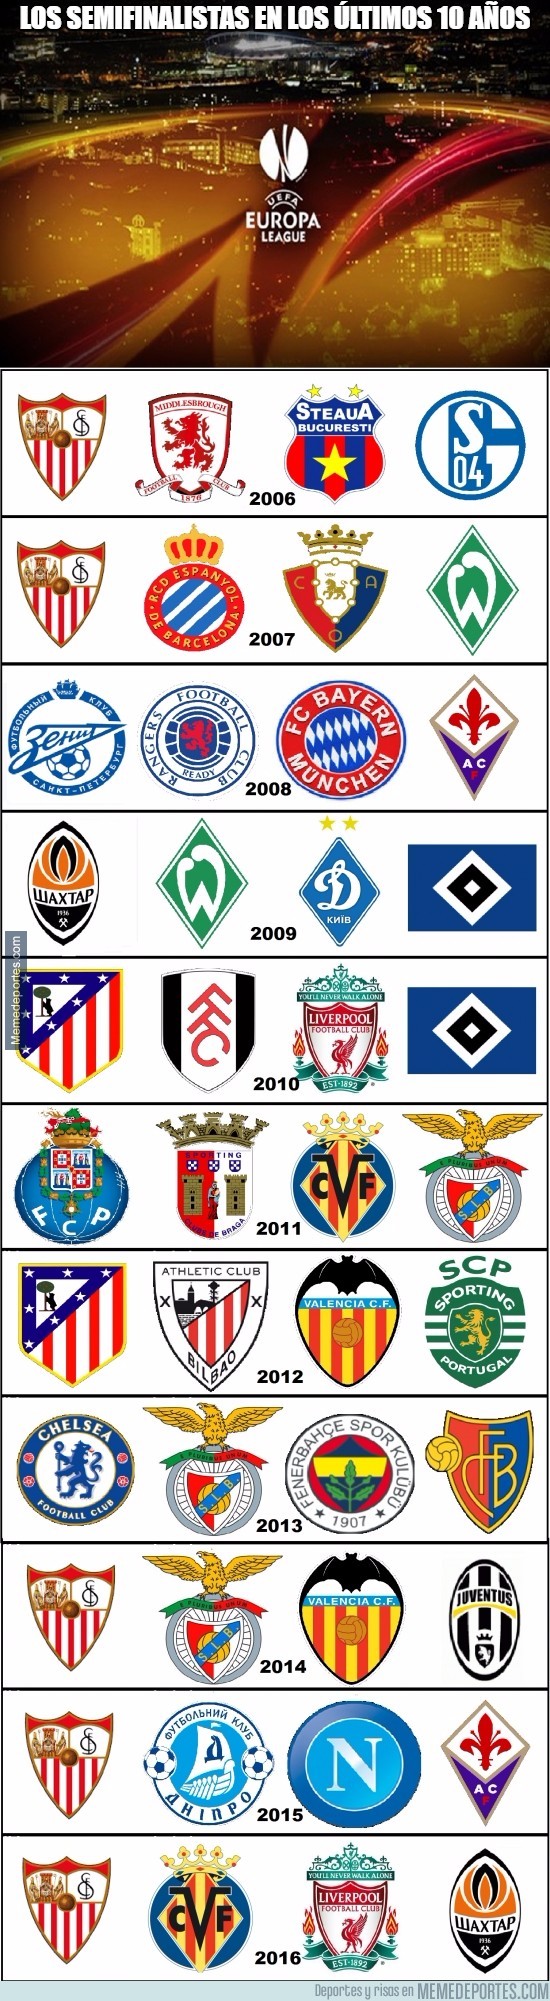 839082 - Los semifinalistas de Europa League en los últimos 10 años